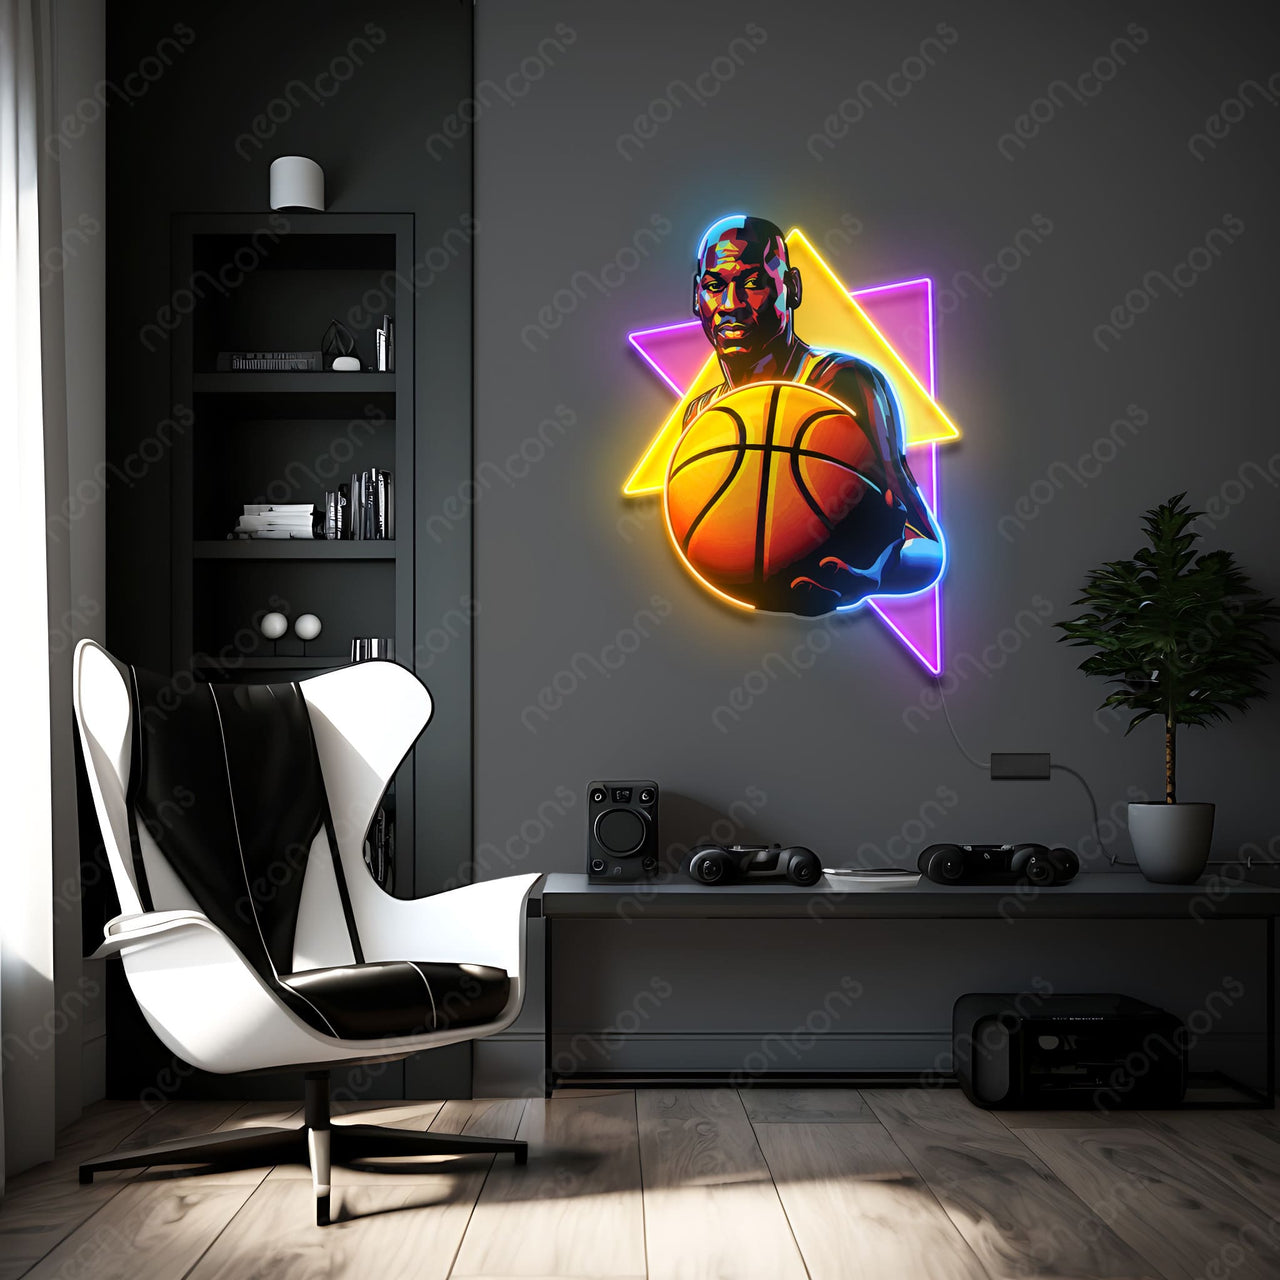 "Baller" Neon x Acrylic Artwork by Neon Icons